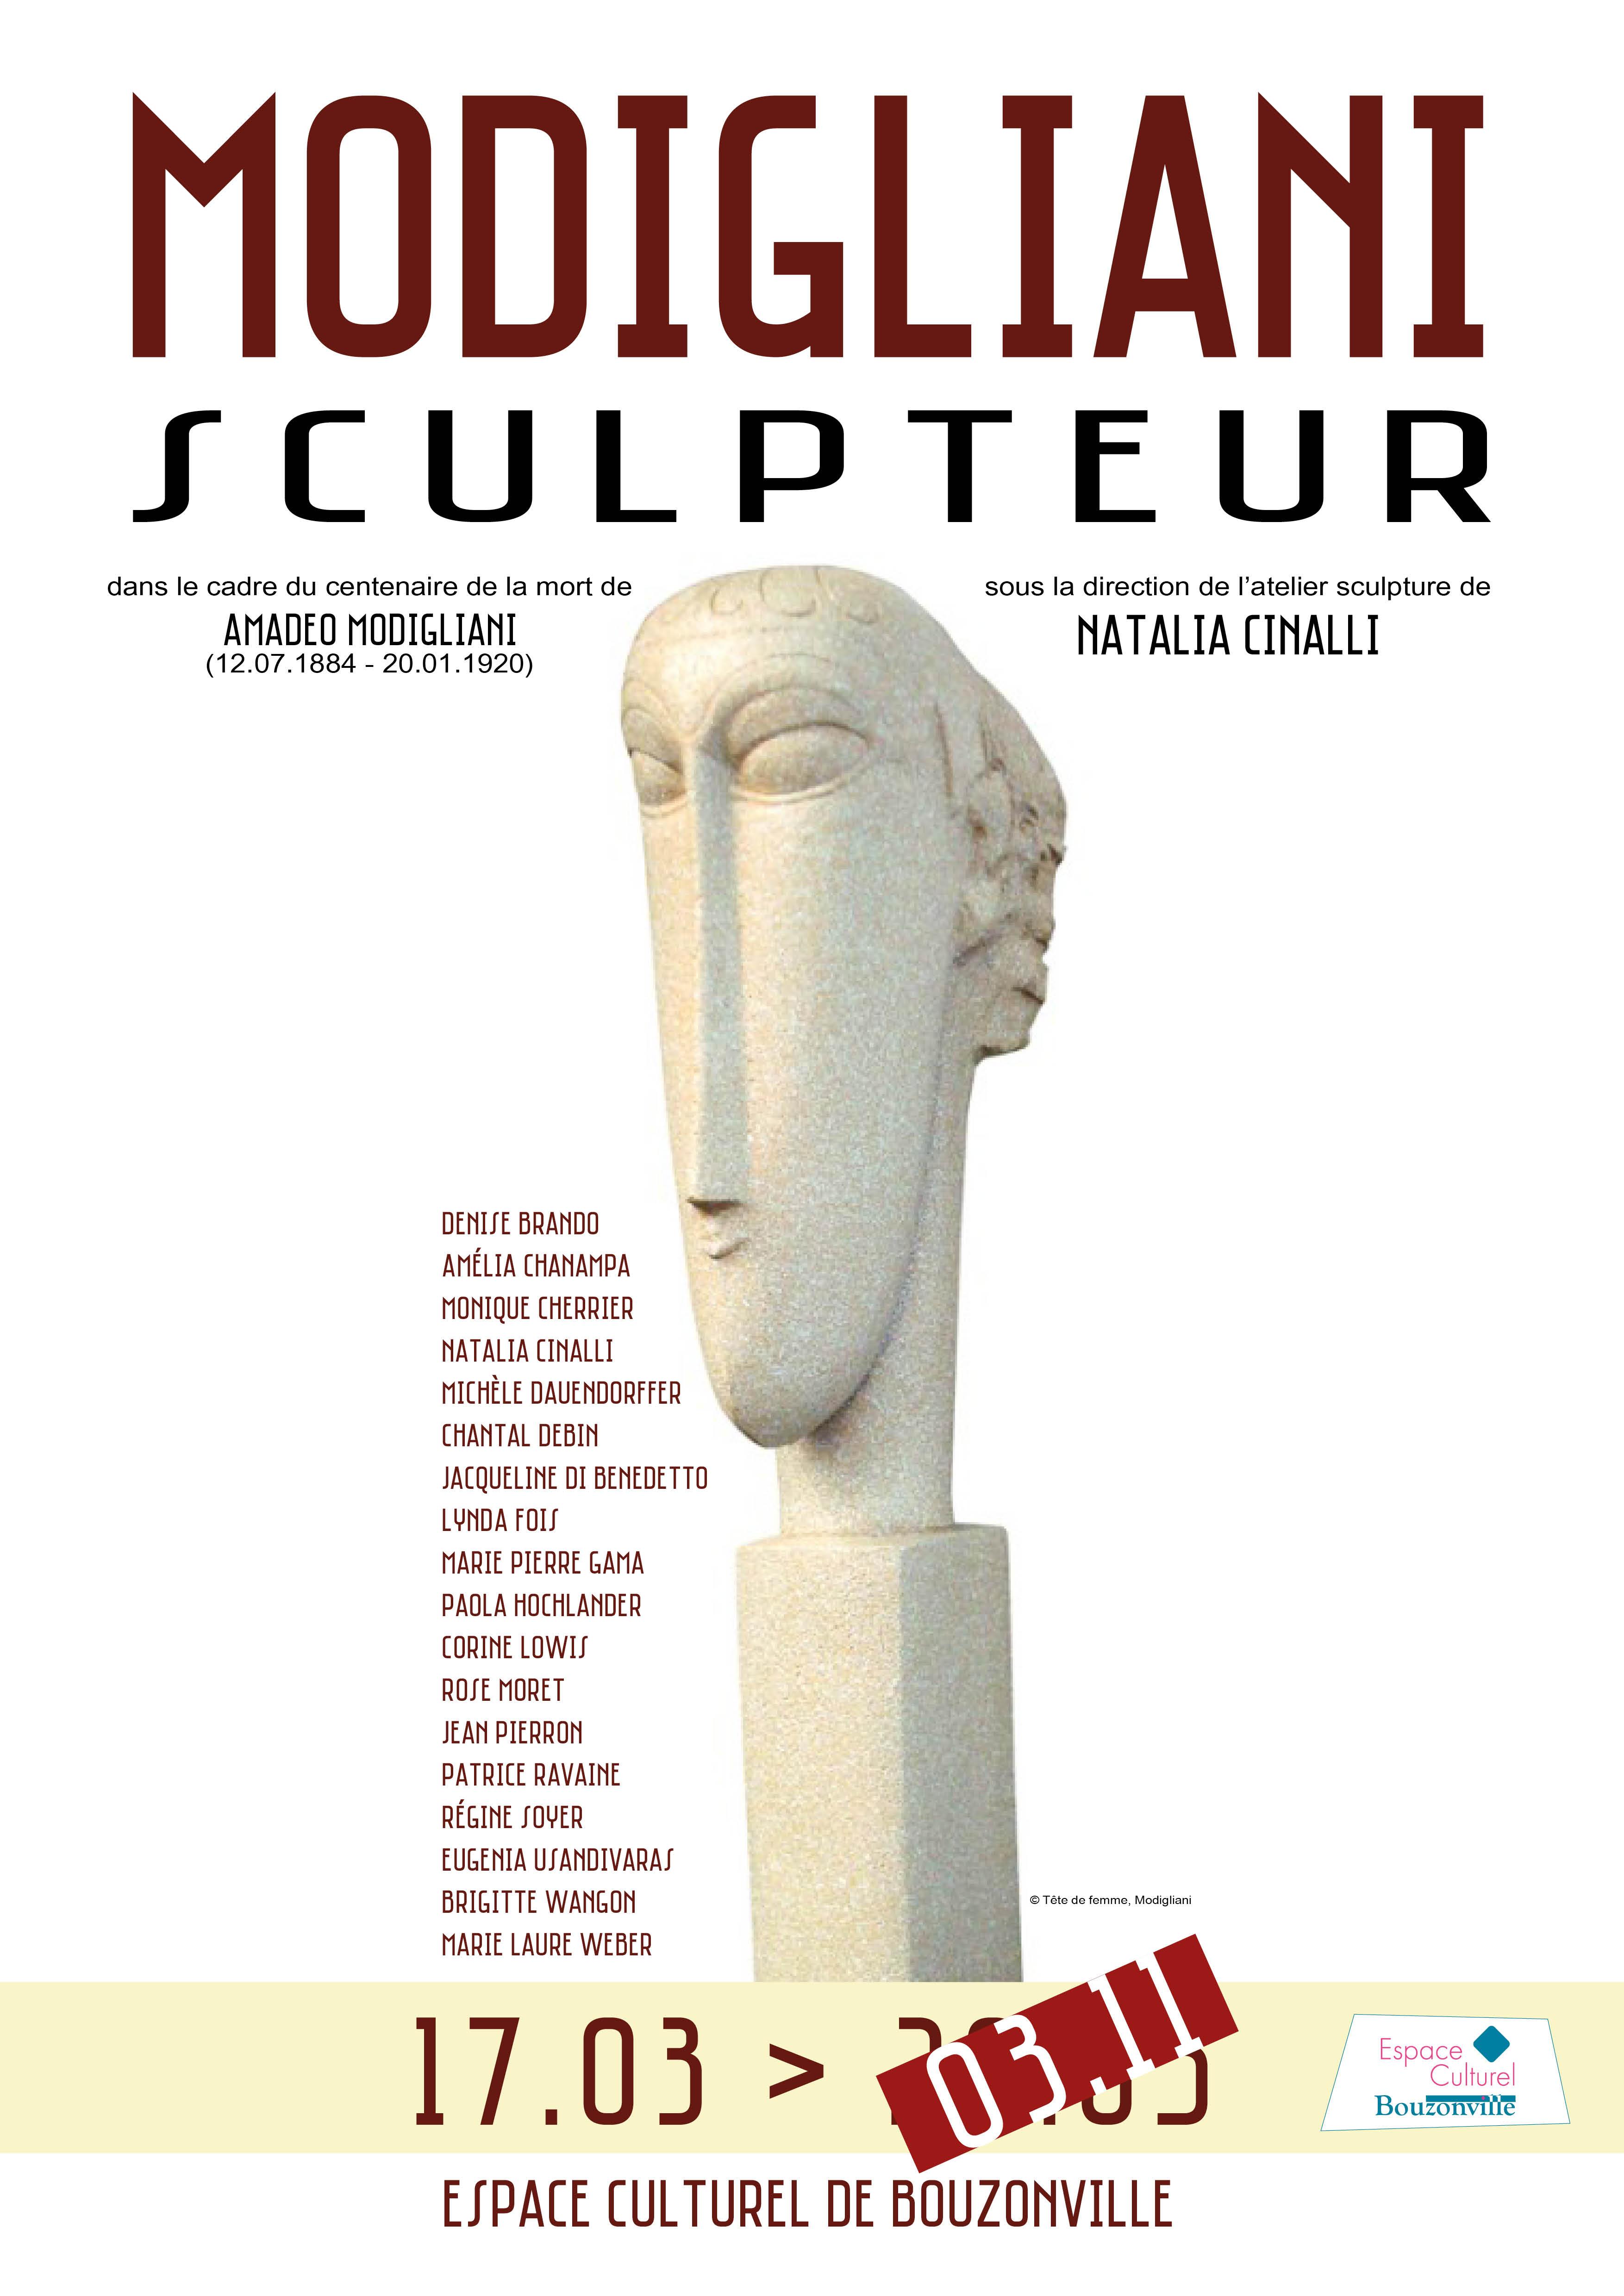 Modigliani sculpteur